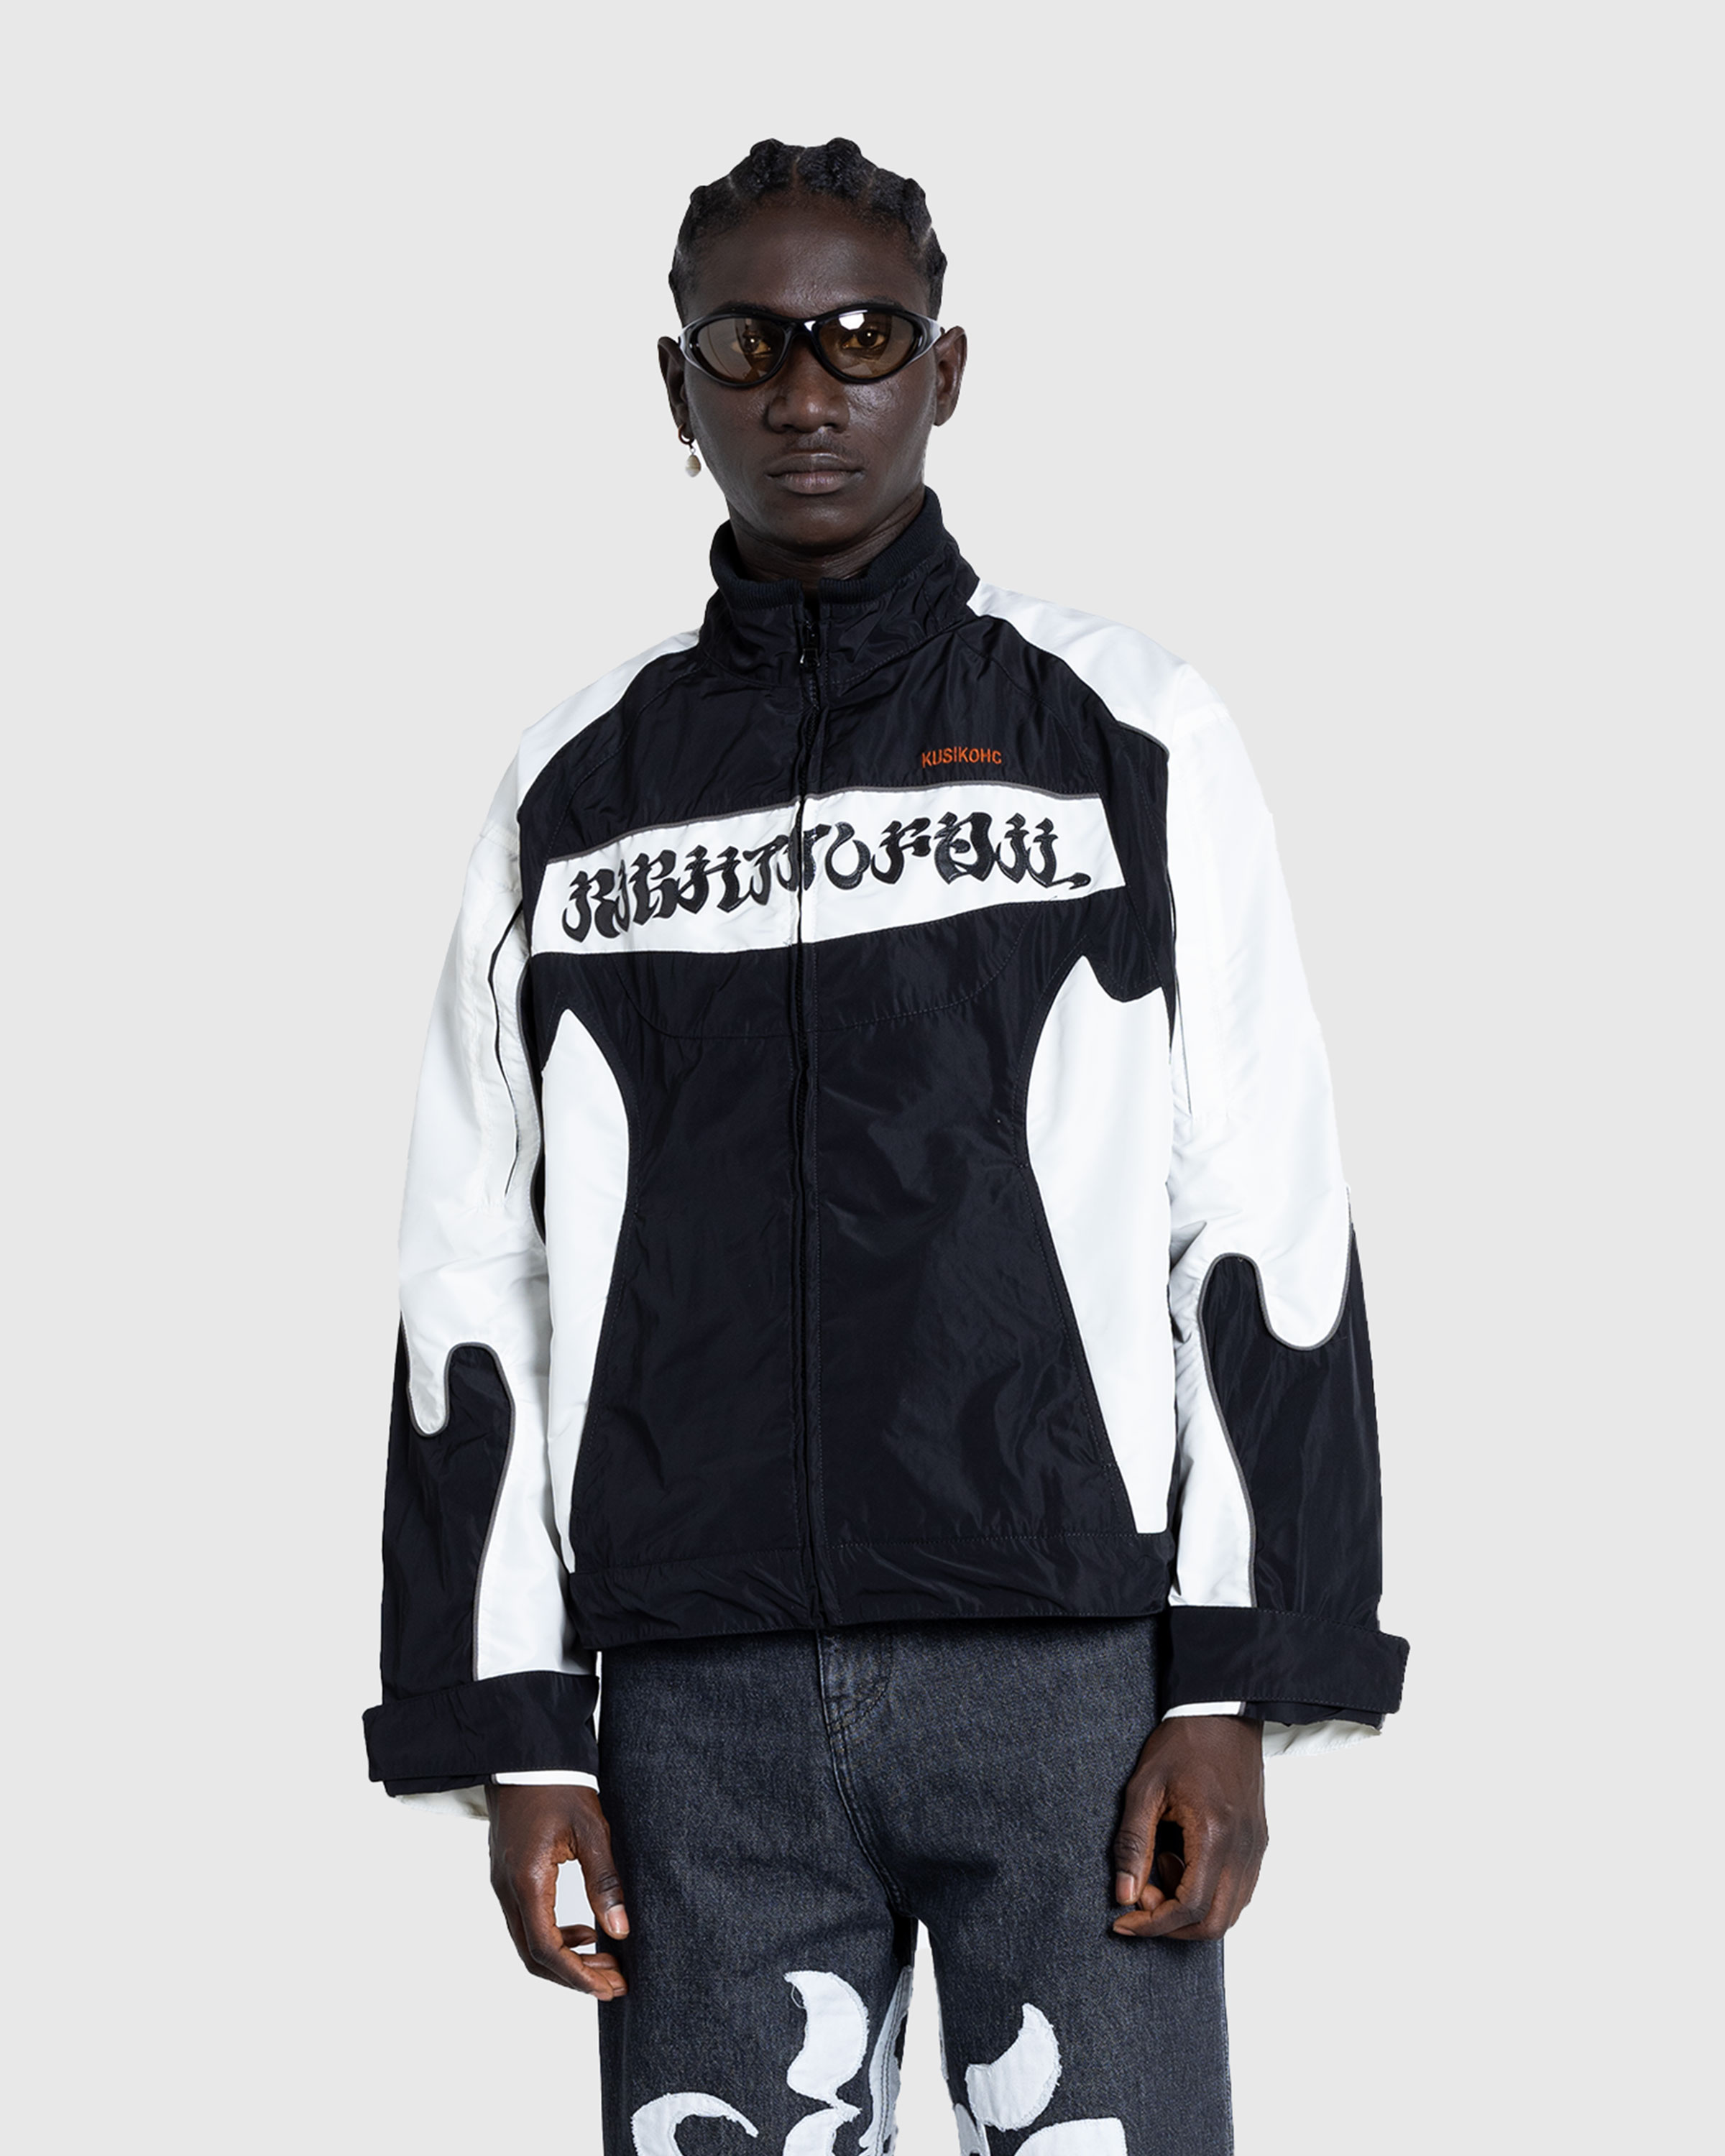 KUSIKOHC – Rider Jacket Black/Cannoli Cream - Outerwear - Black - Image 2